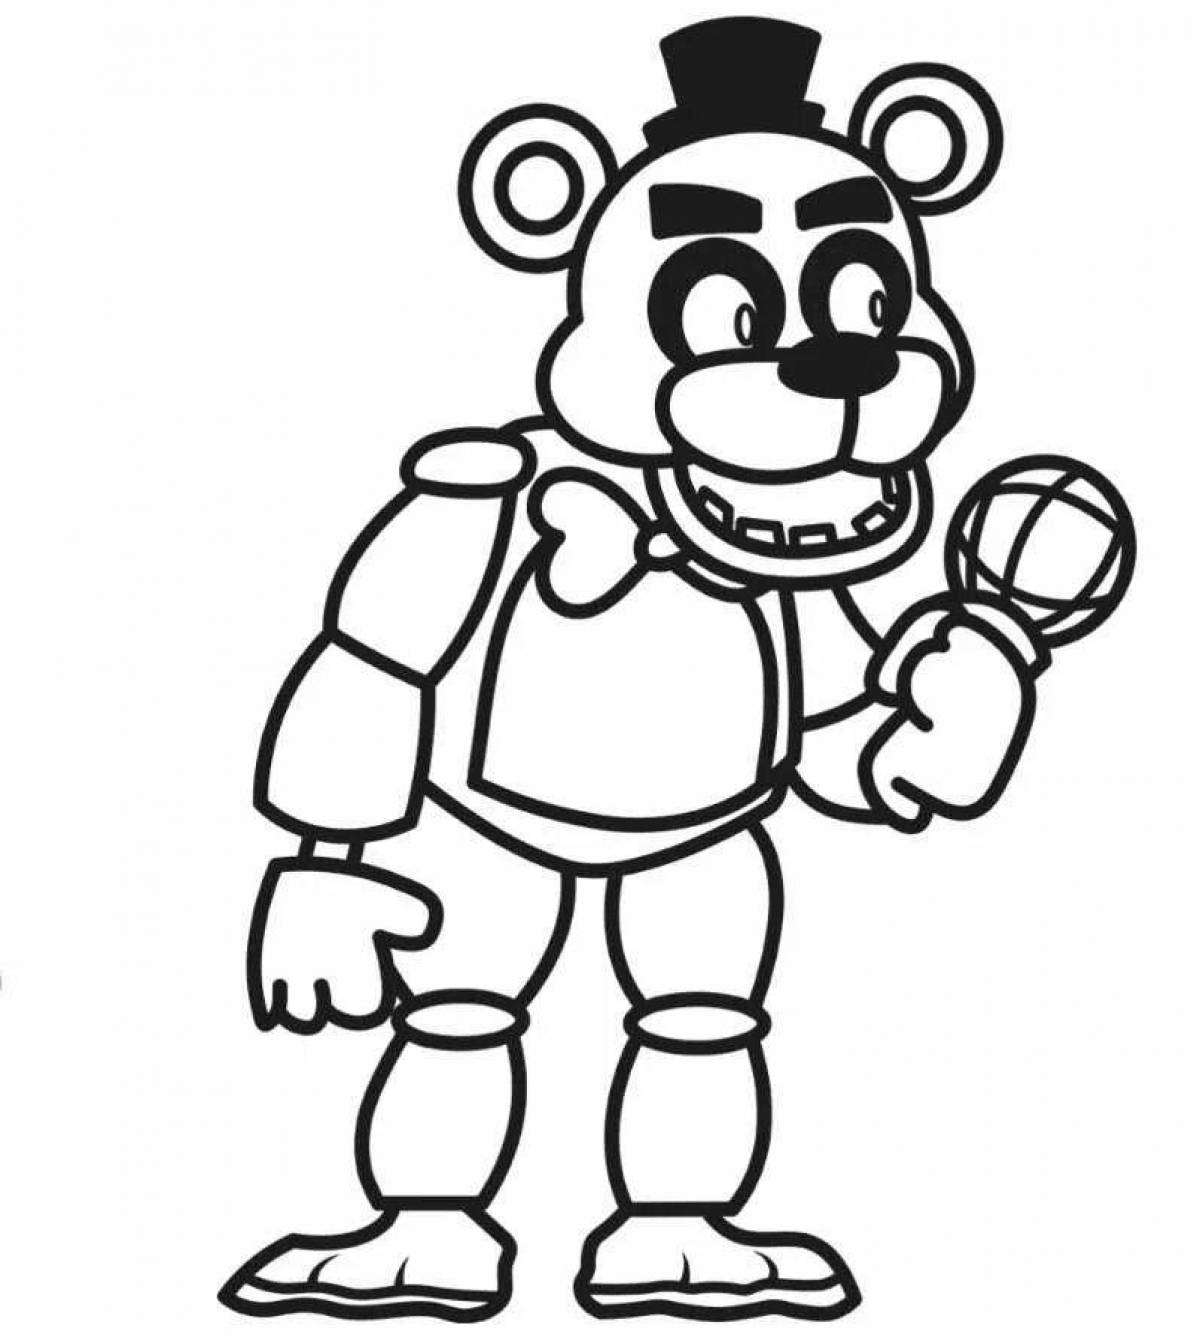 Freddy teddy bear coloring book